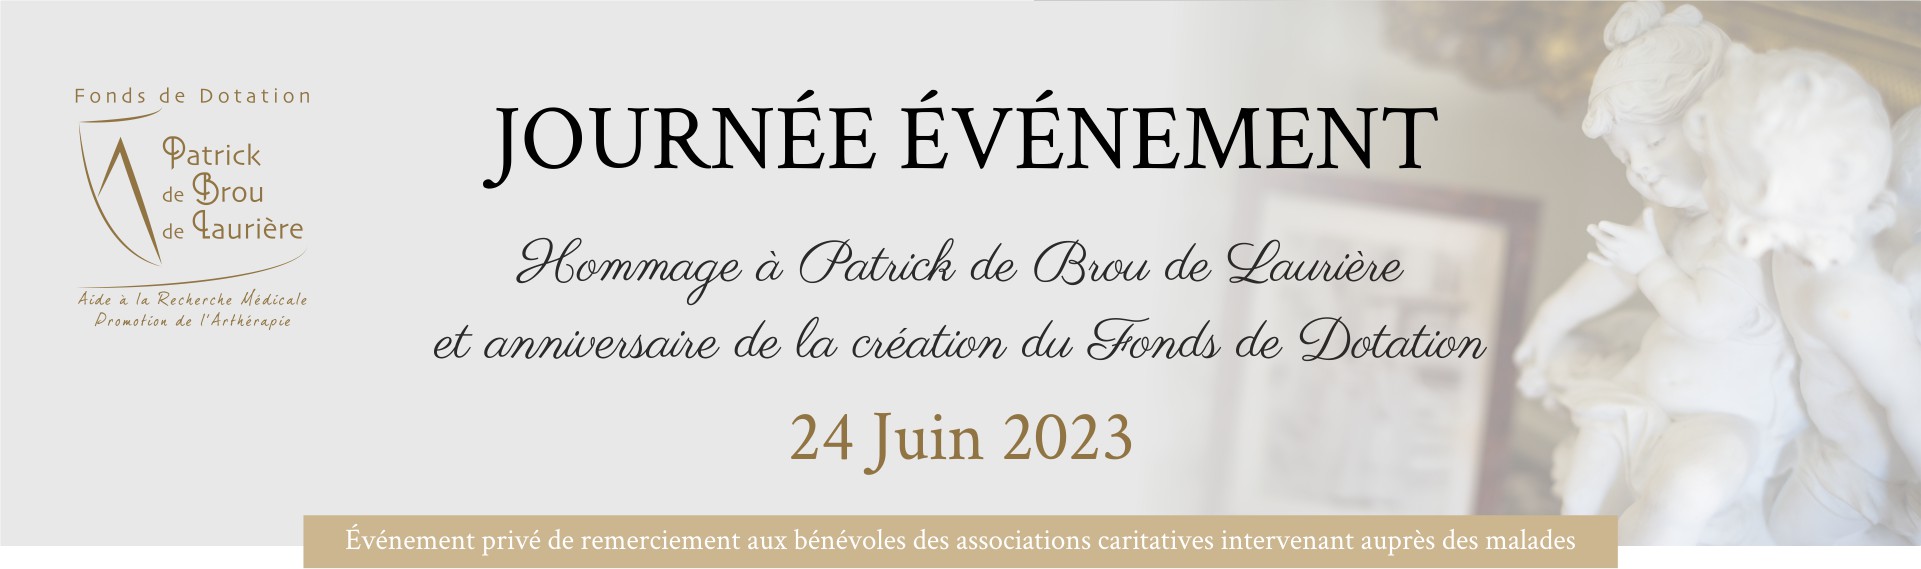 Hommage à Patrick de Brou de Laurière et anniversaire de la création du Fonds de dotation